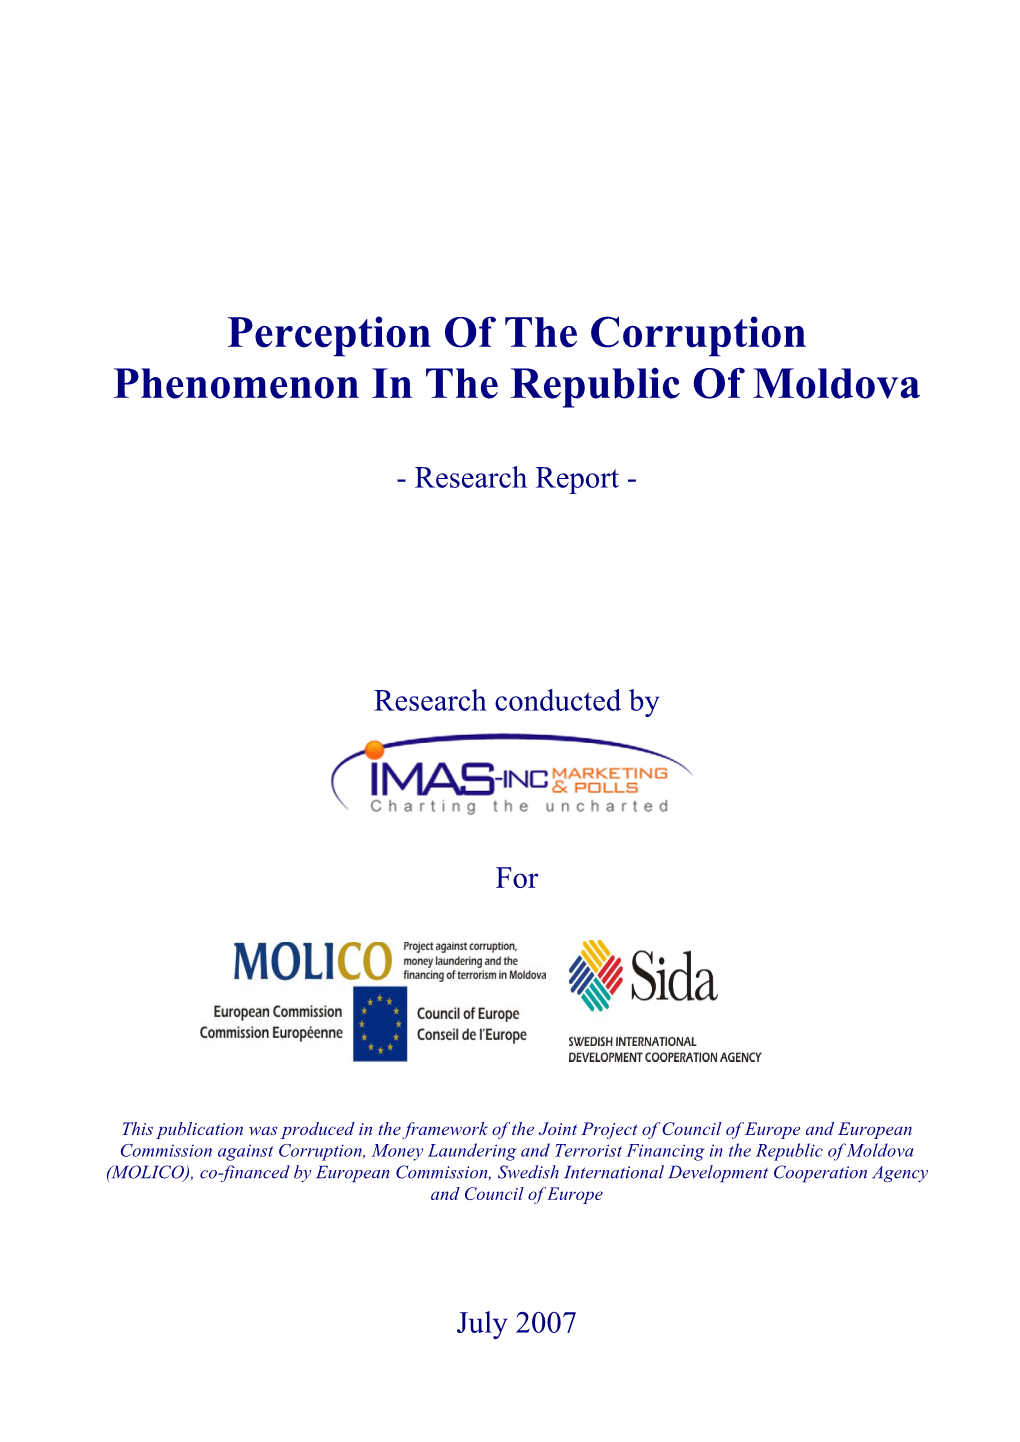 Perception of the Corruption Phenomenon in the Republic of Moldova